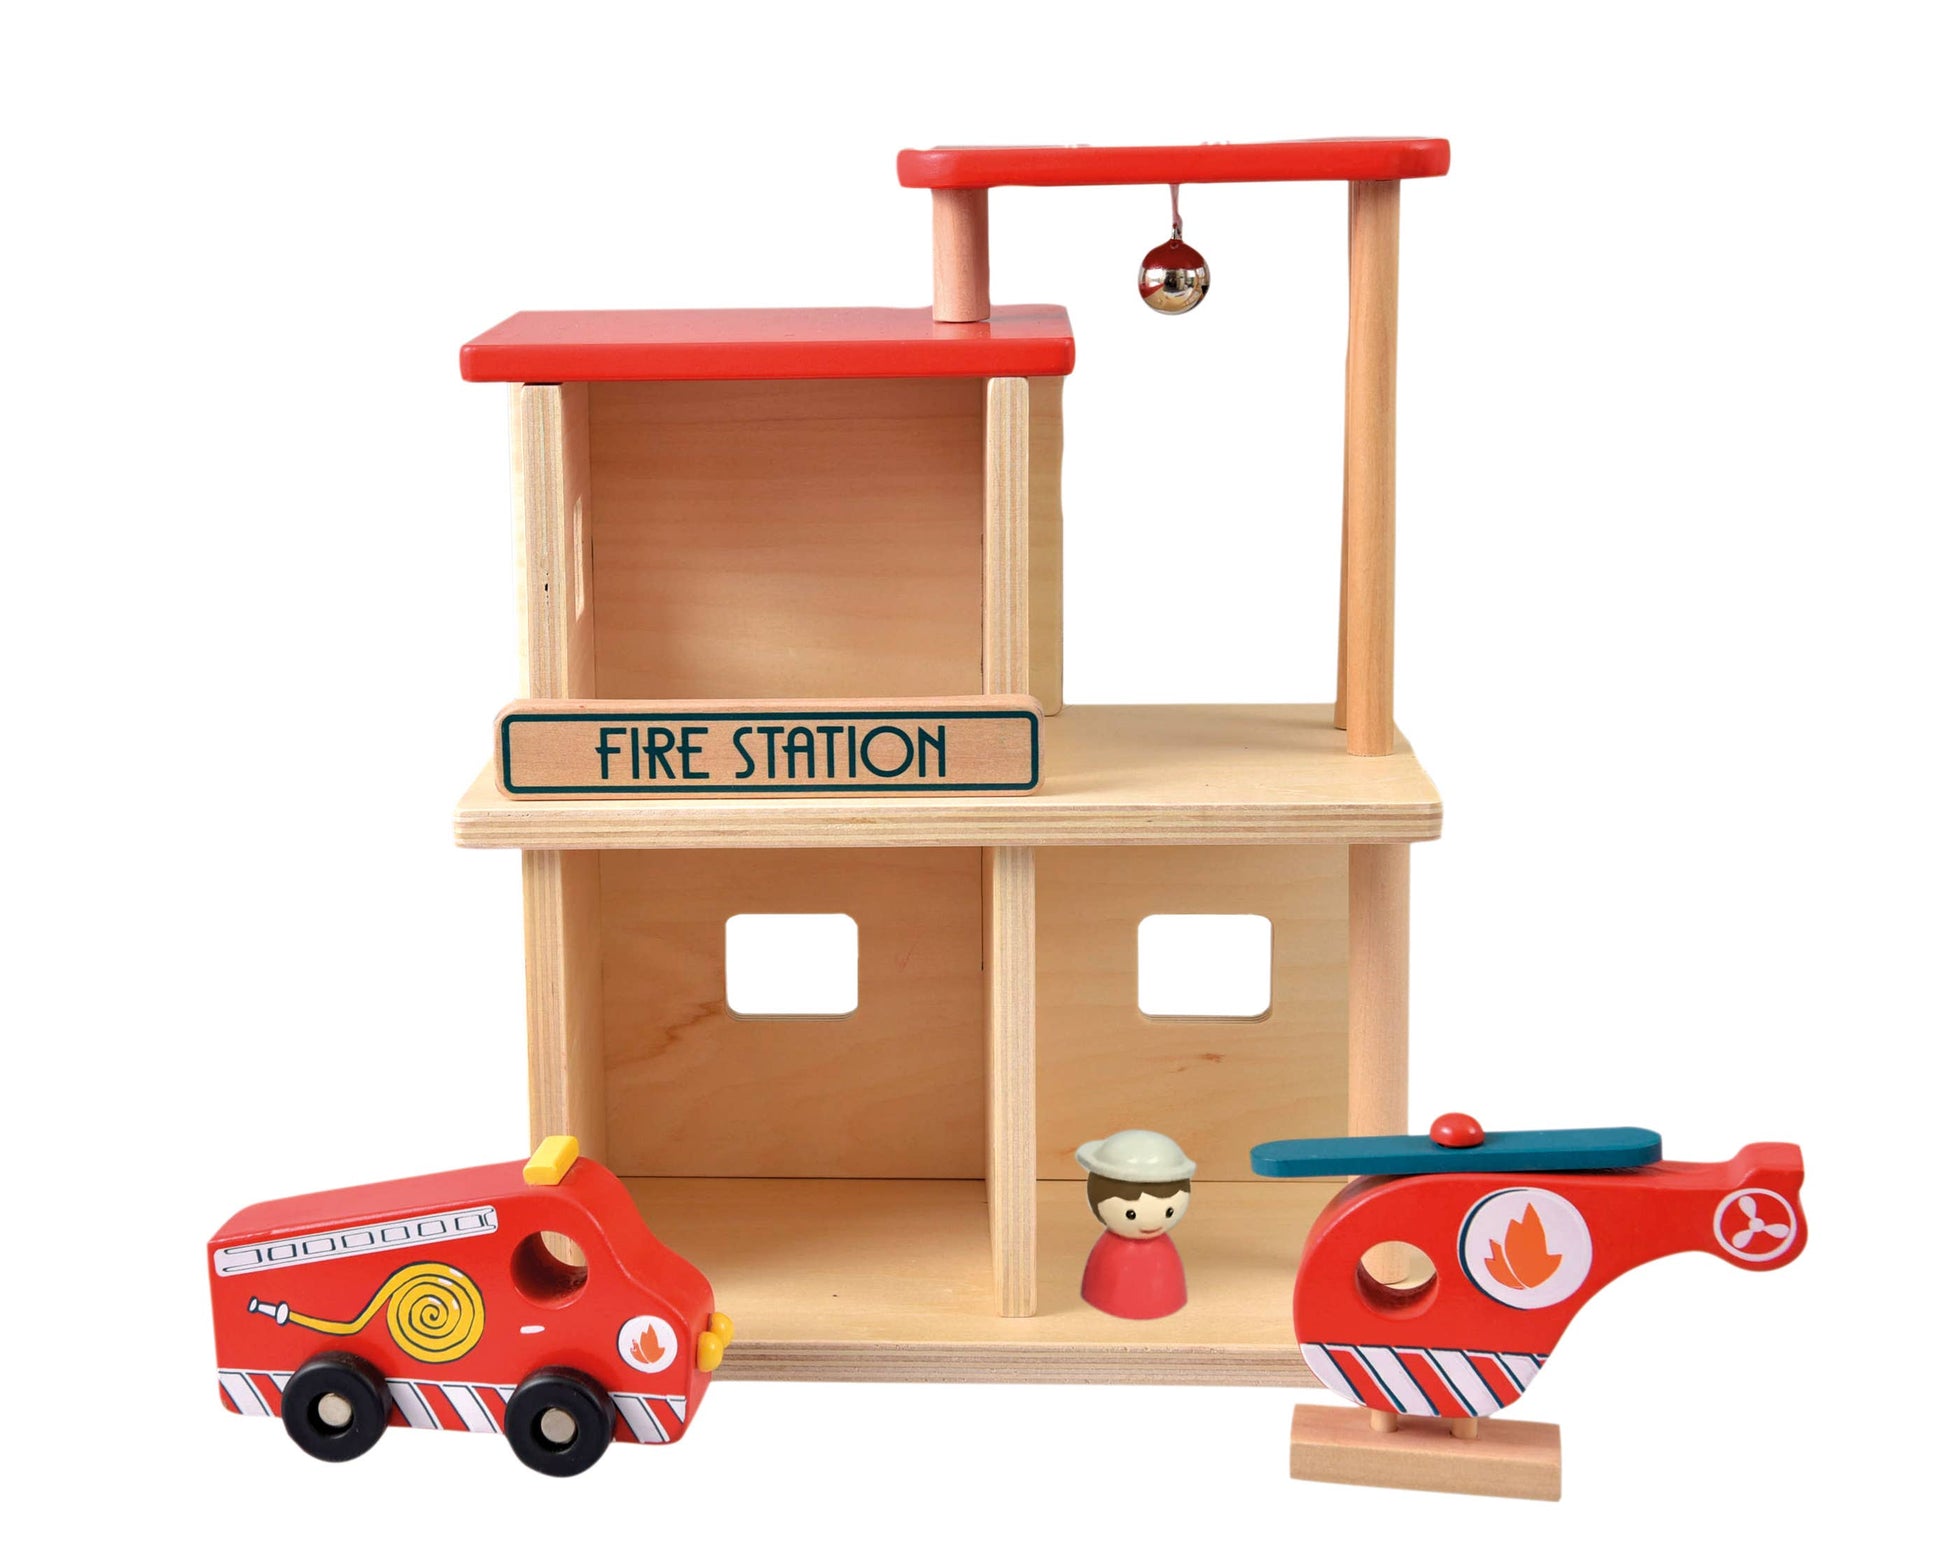 Wooden Fire Station - Einstein's Attic